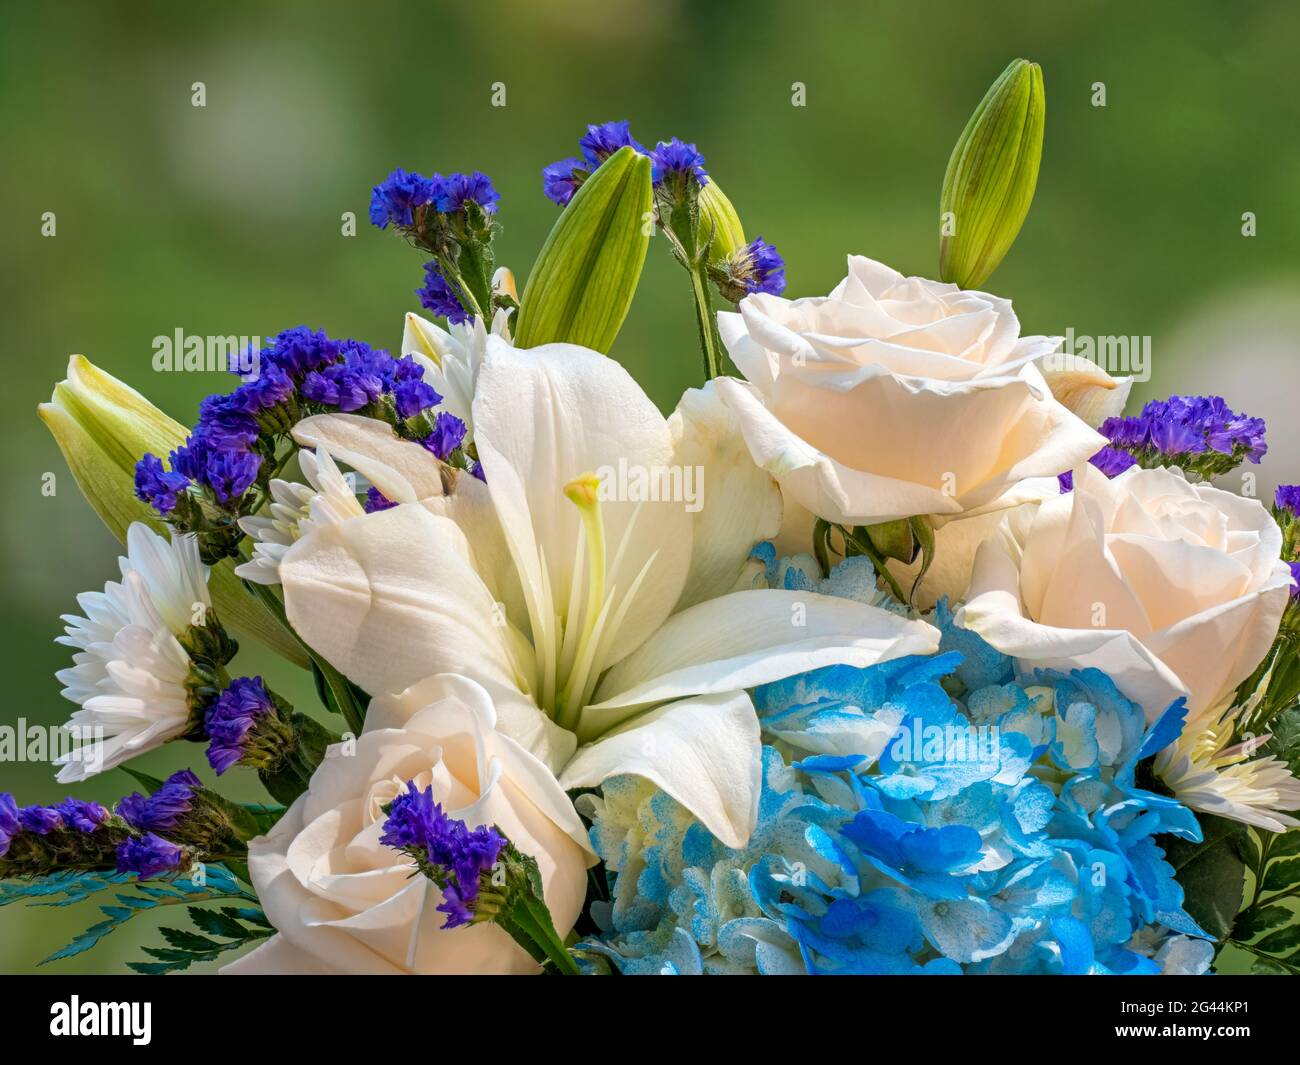 Arrangement floral de lys blancs et de roses Banque D'Images